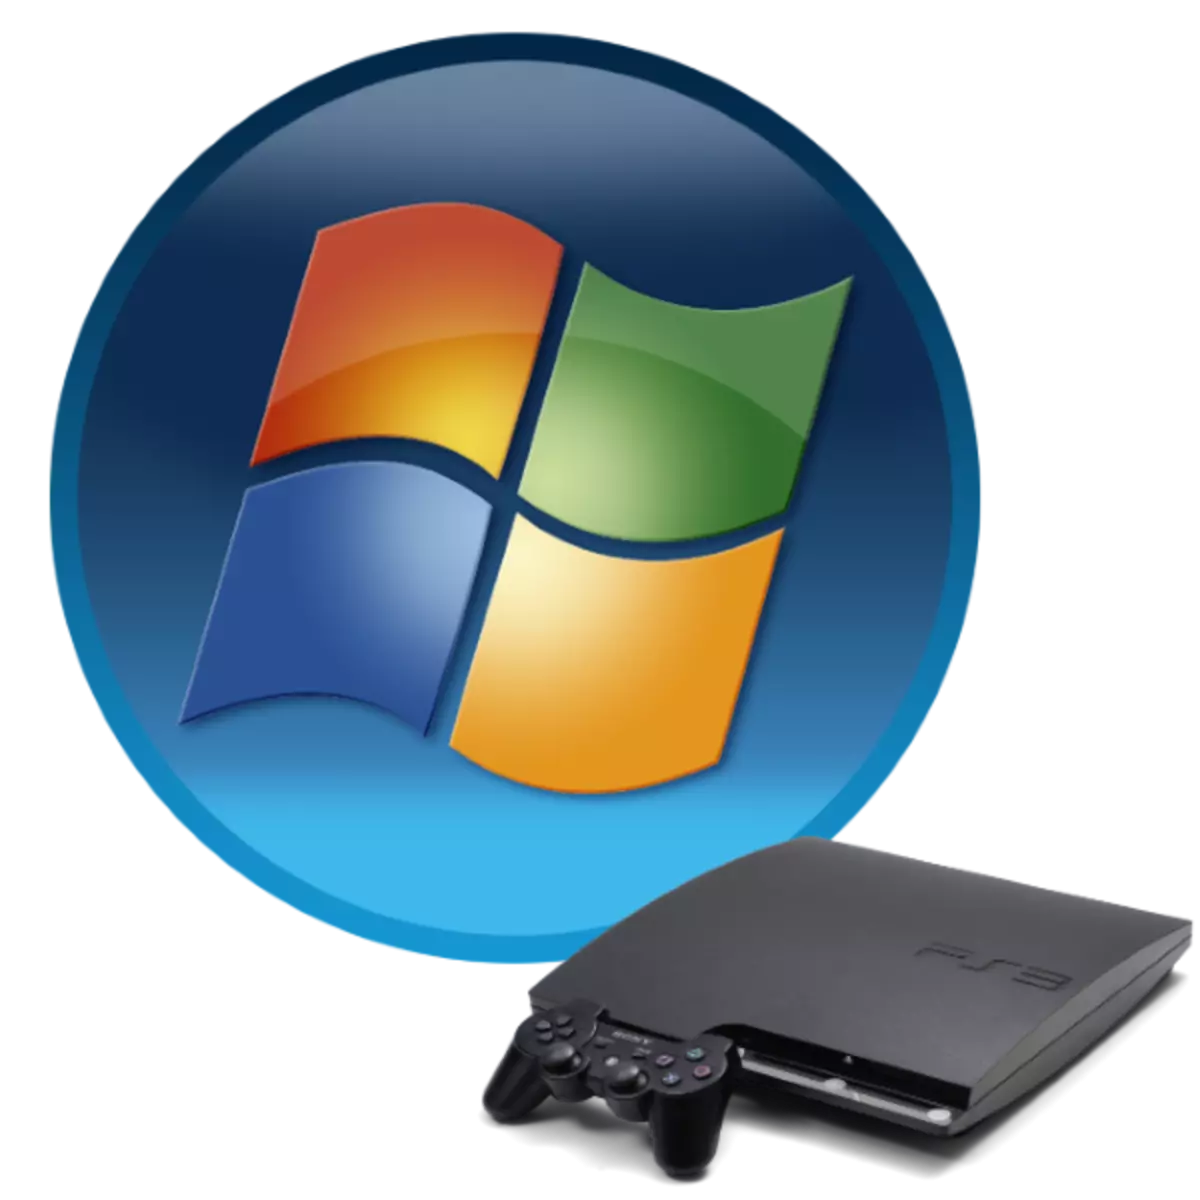 PS3 emulsies for pc Windows 7